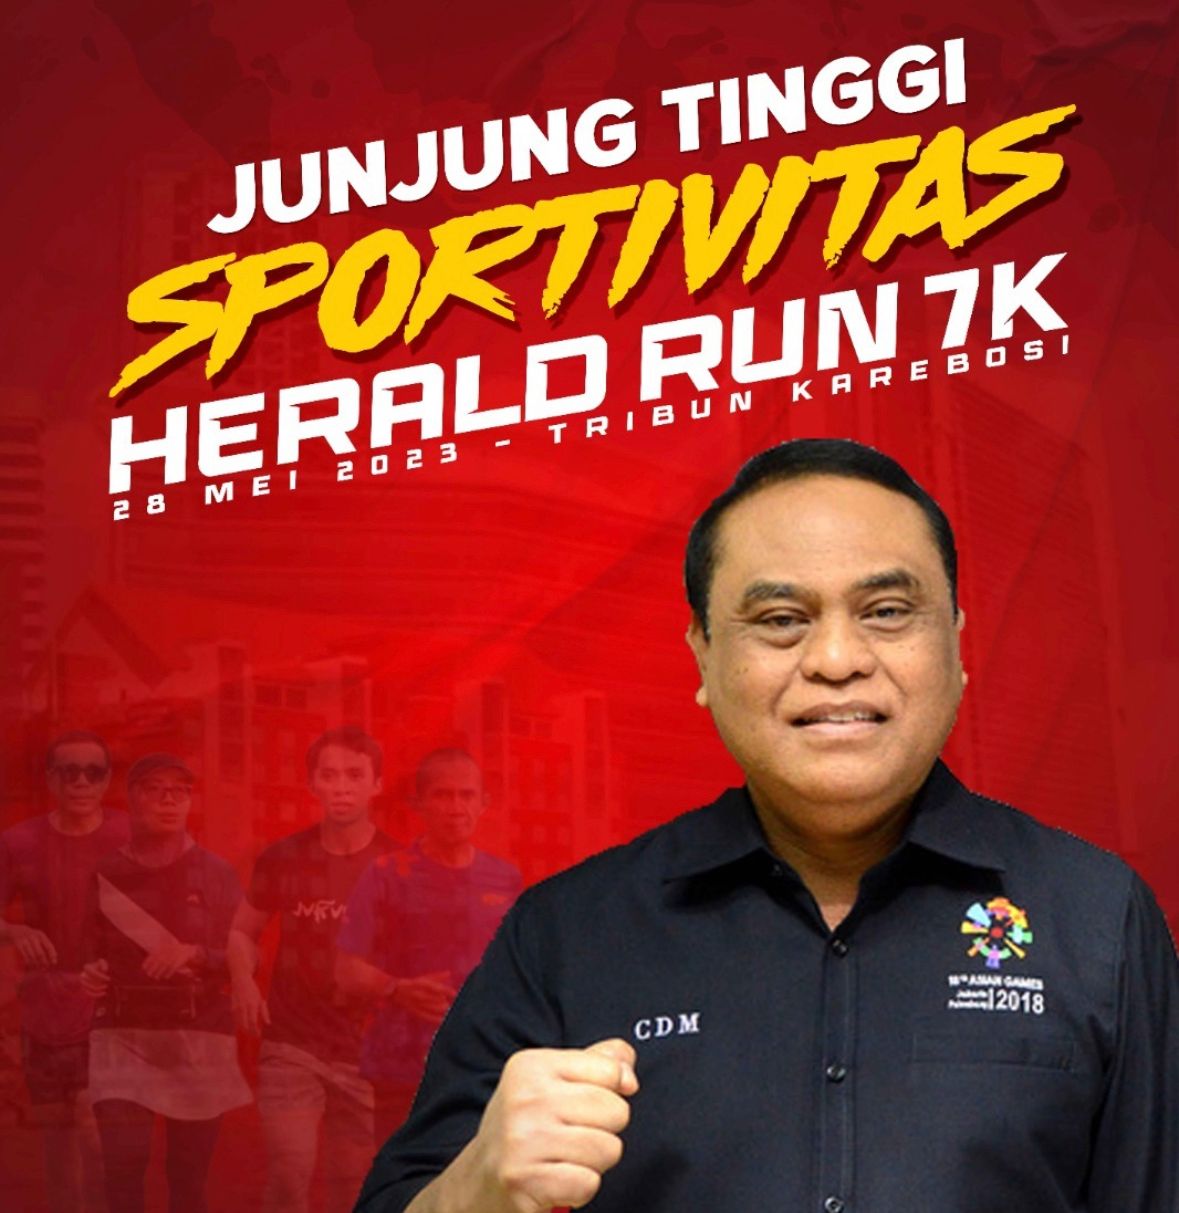 Haji Syafruddin Siap Lepas Runner Herald Run 7K di Makassar